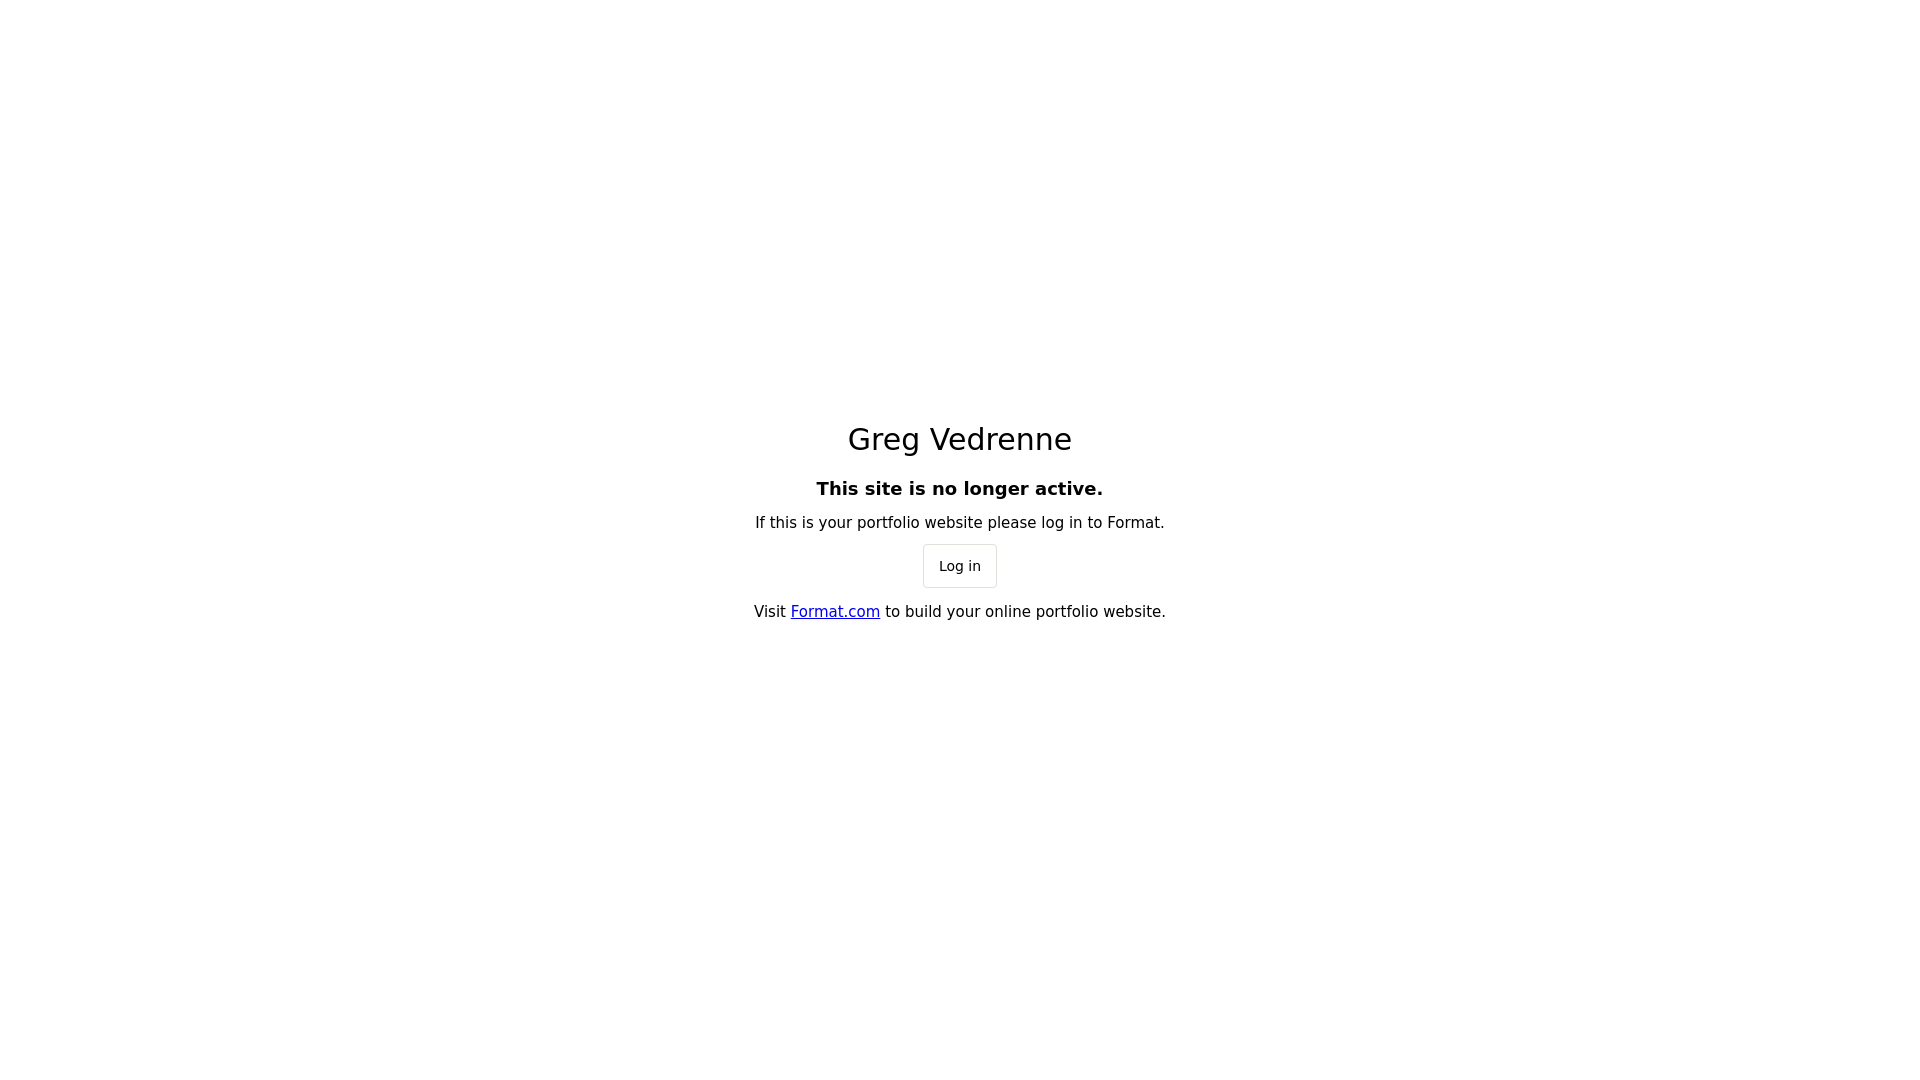 Greg vedrenne desktop